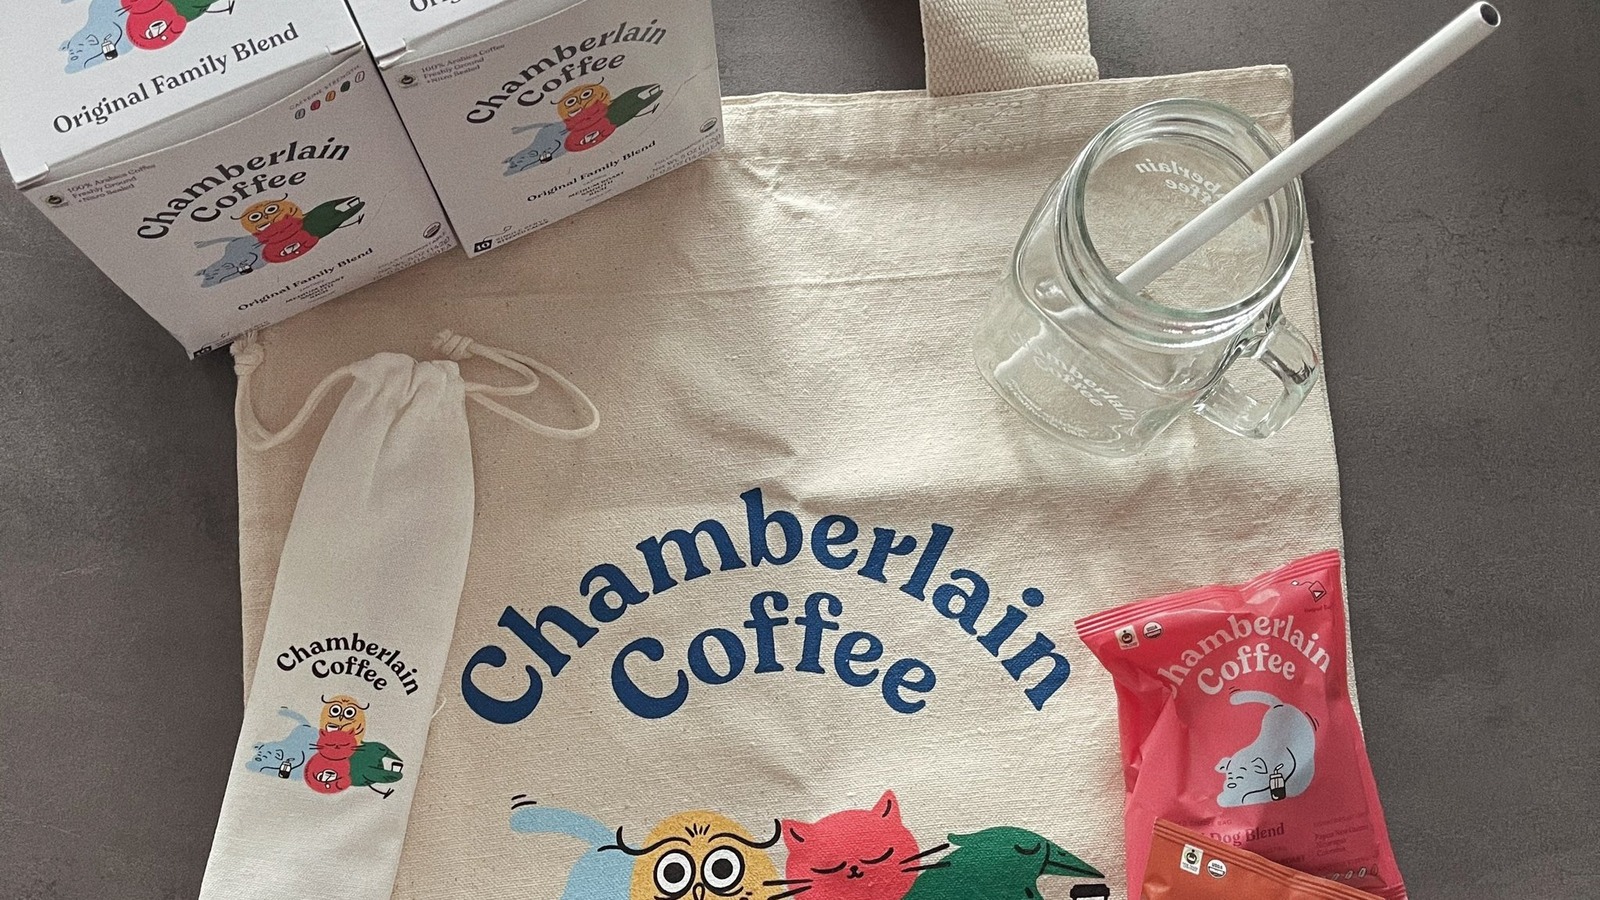 Chamberlain Coffee Launches Hot Chocolate